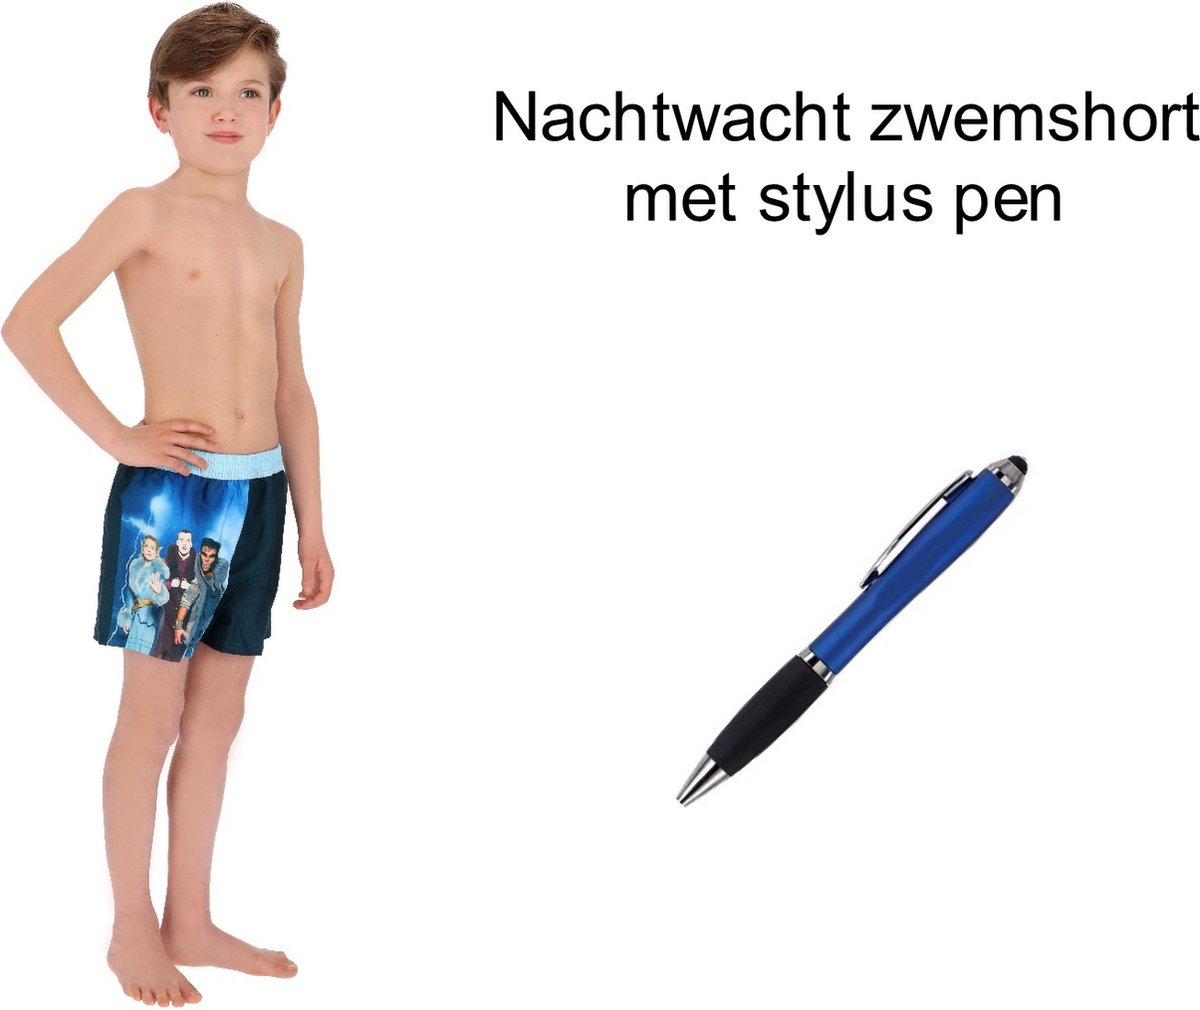 Nachtwacht Zwemshort - Zwembroek - boys. Maat 134/140 cm - 9/10 jaar + EXTRA 1 Stylus Pen.